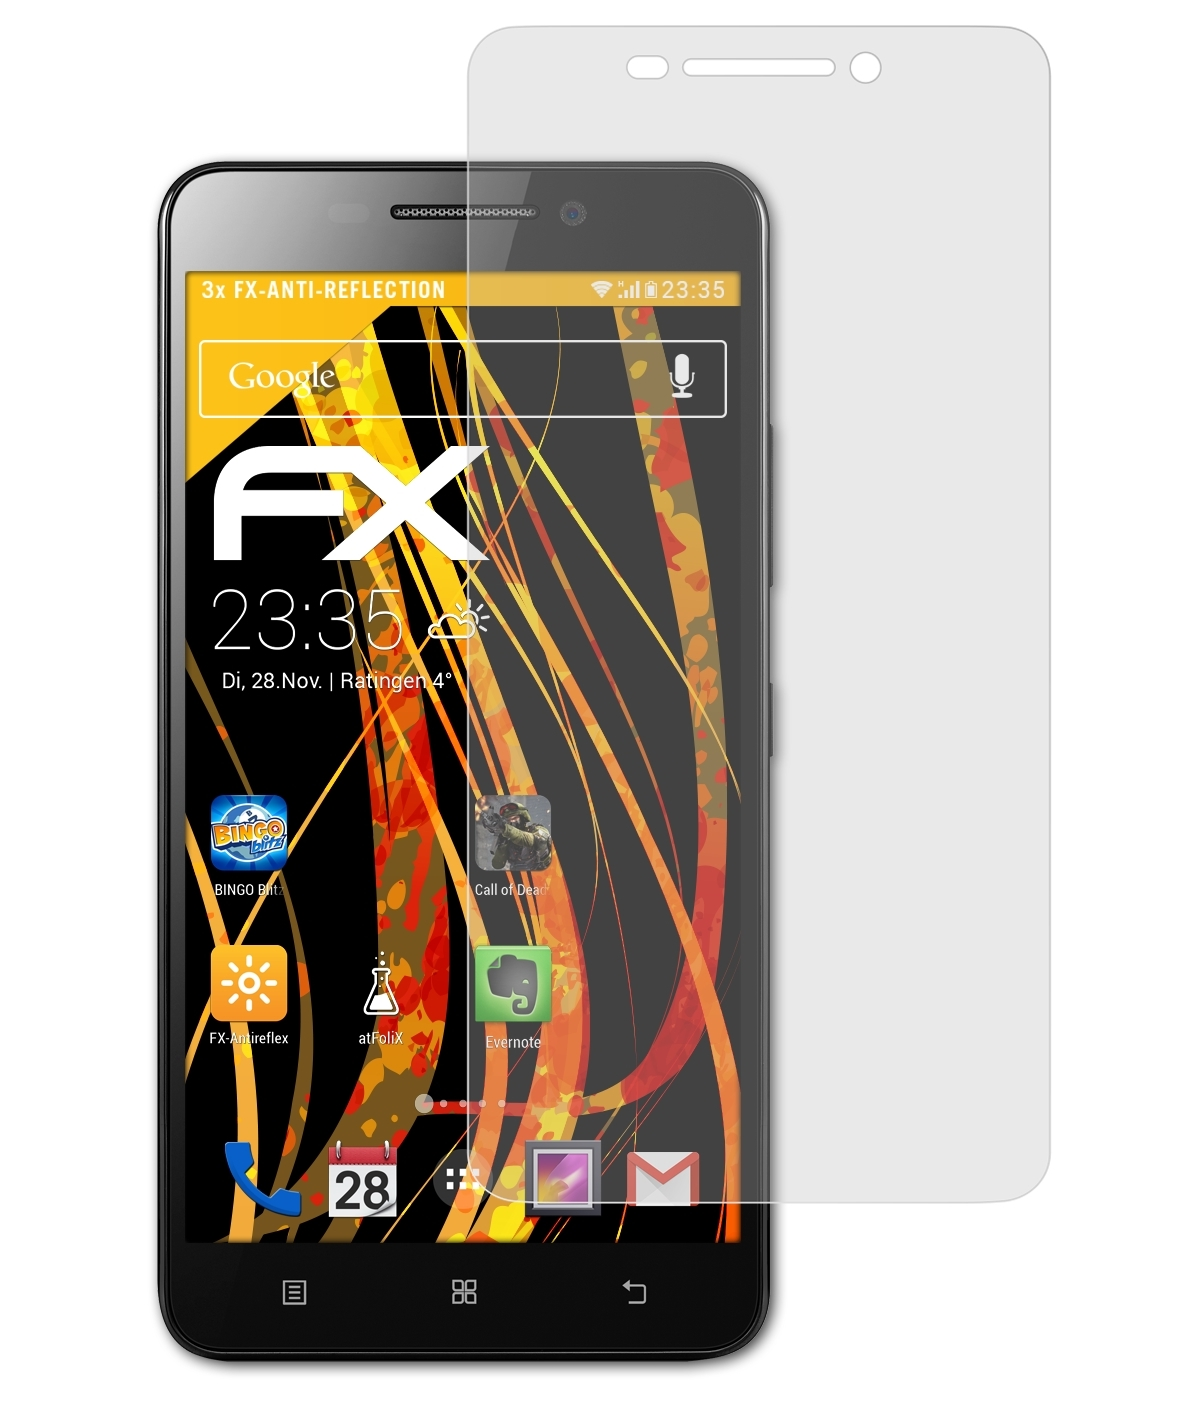 A5000) FX-Antireflex Lenovo 3x ATFOLIX Displayschutz(für